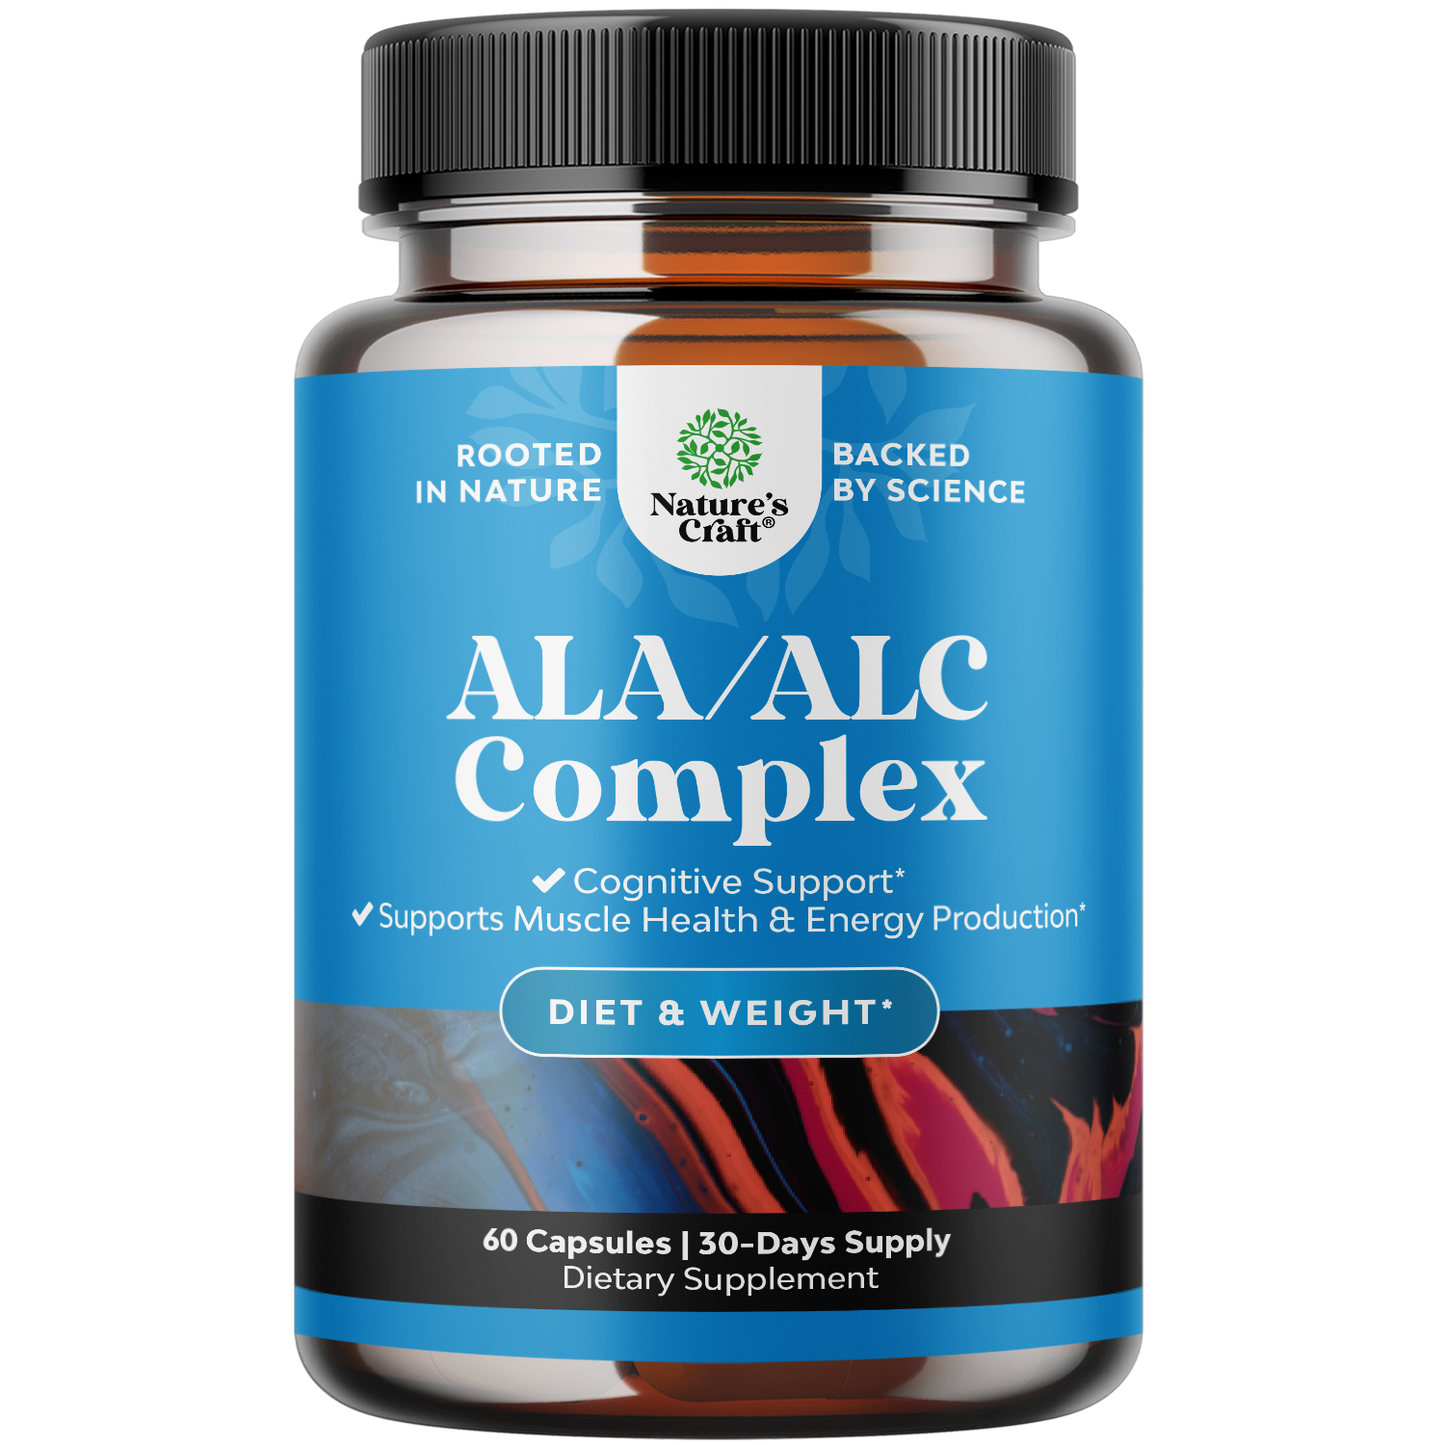 ALA/ALC Complex - 60 Capsules